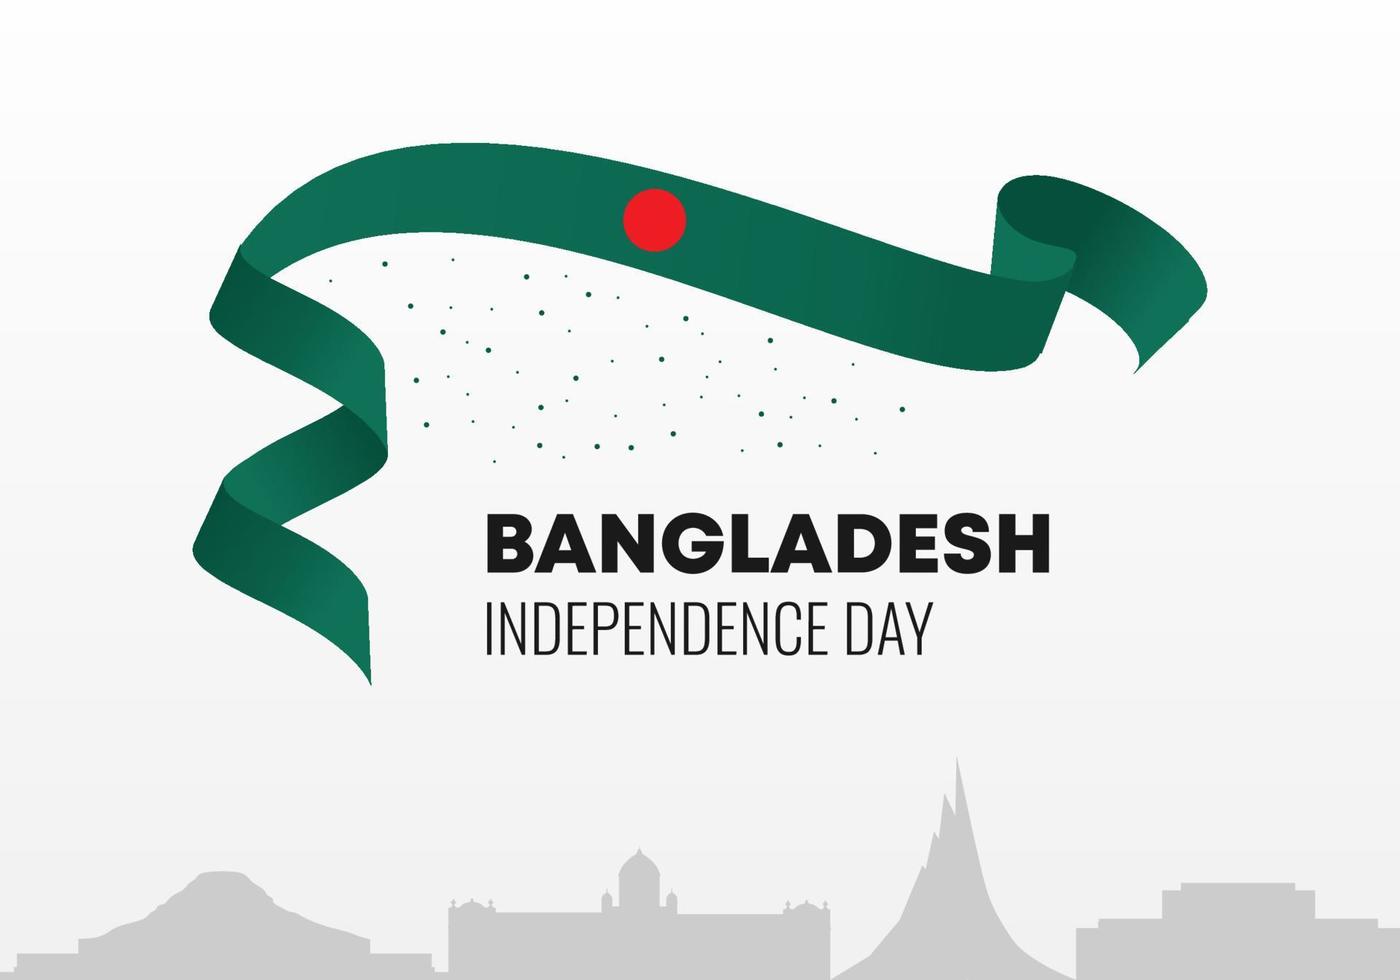 fundo do dia da independência de Bangladesh em 26 de março. vetor